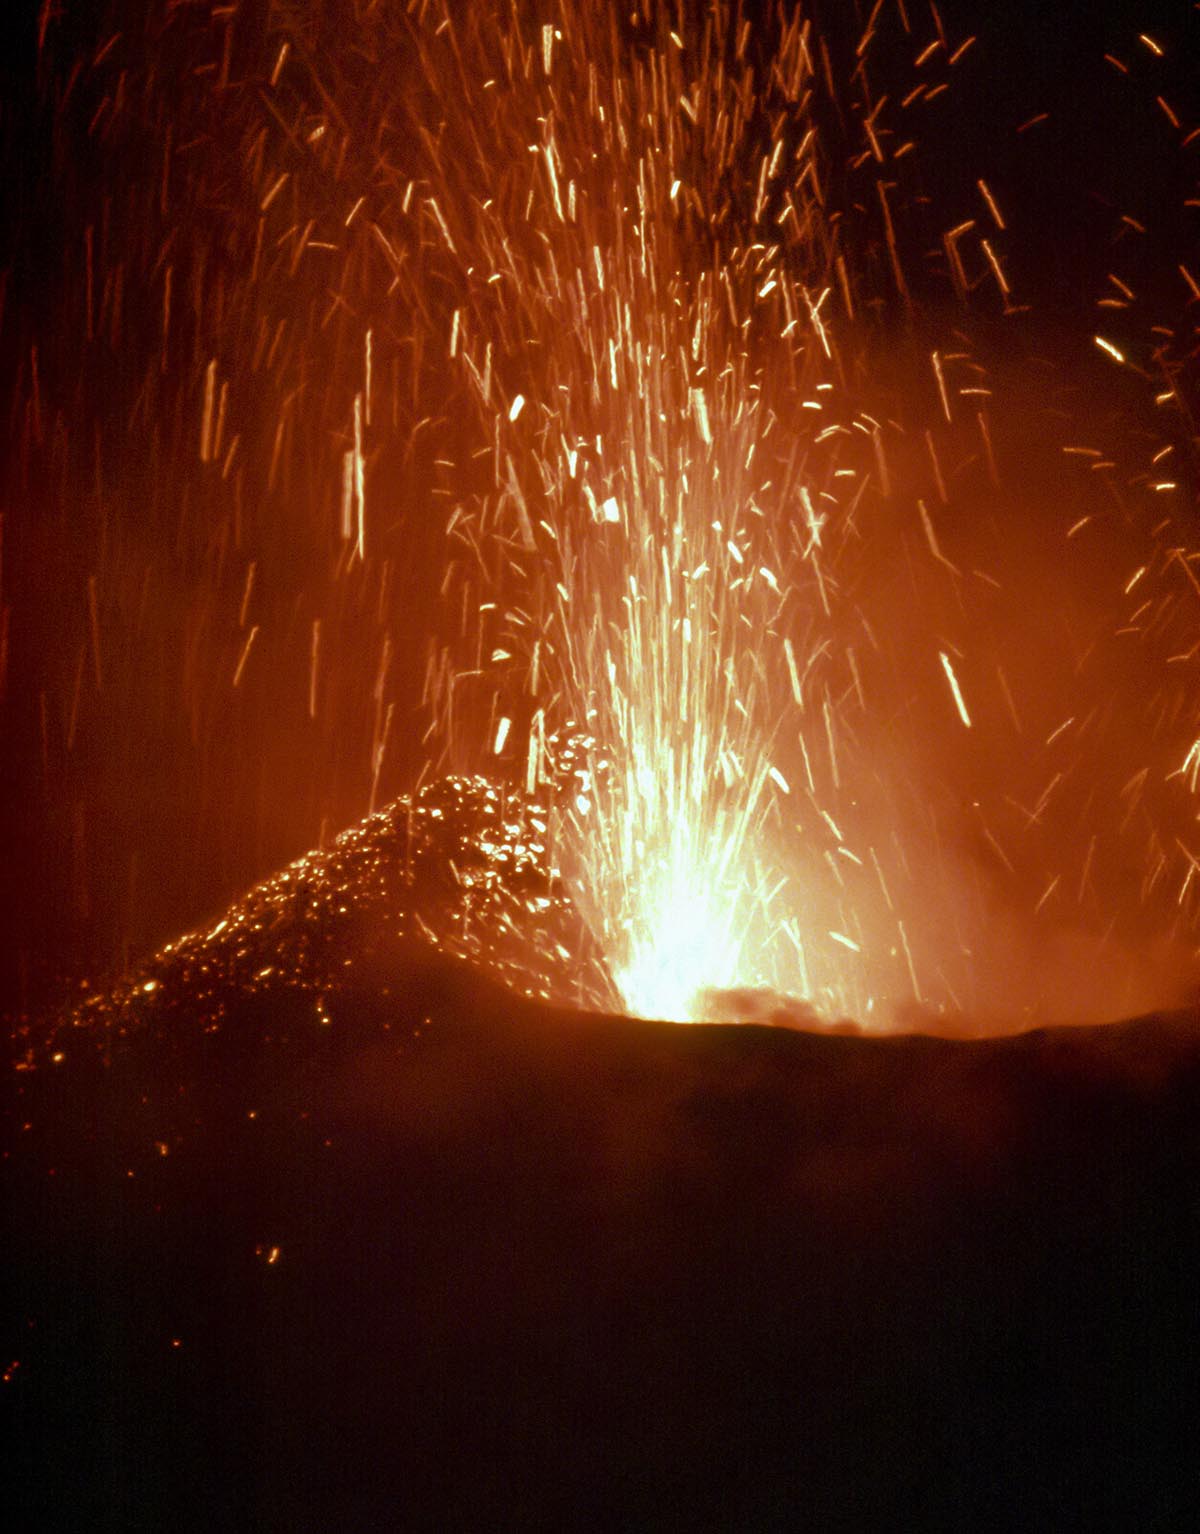 Eruption 9